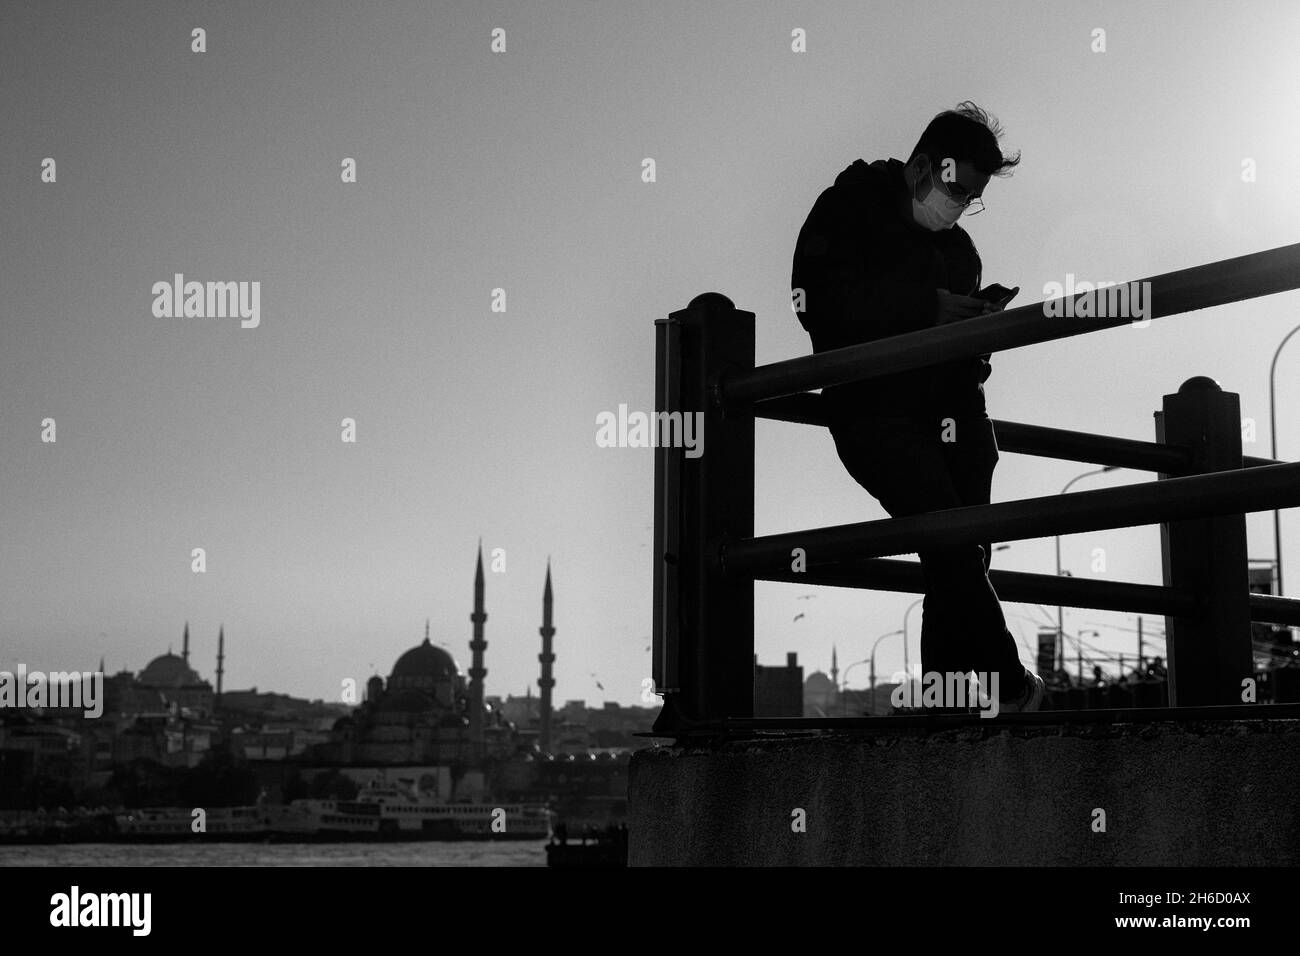 Estambul, Turquía-Nov.12, 2021: Un joven con máscara protectora se encuentra en el puente de Galata y revisa su teléfono móvil. Foto de stock